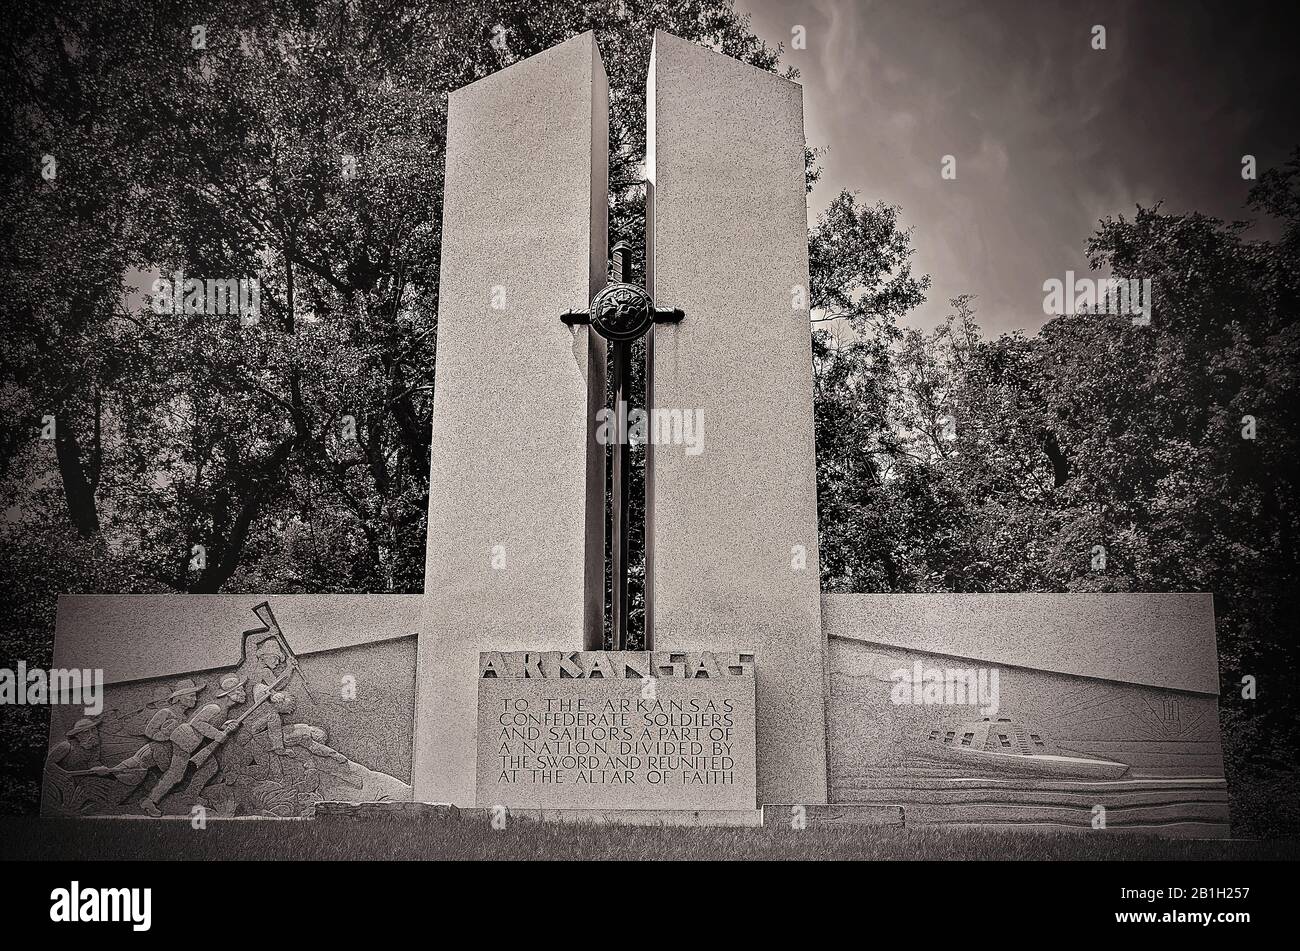 Le mémorial de l'État de l'Arkansas au parc militaire national de Vicksburg rend hommage aux soldats qui ont combattu pendant la guerre civile américaine à Vicksburg, au Mississippi. Banque D'Images